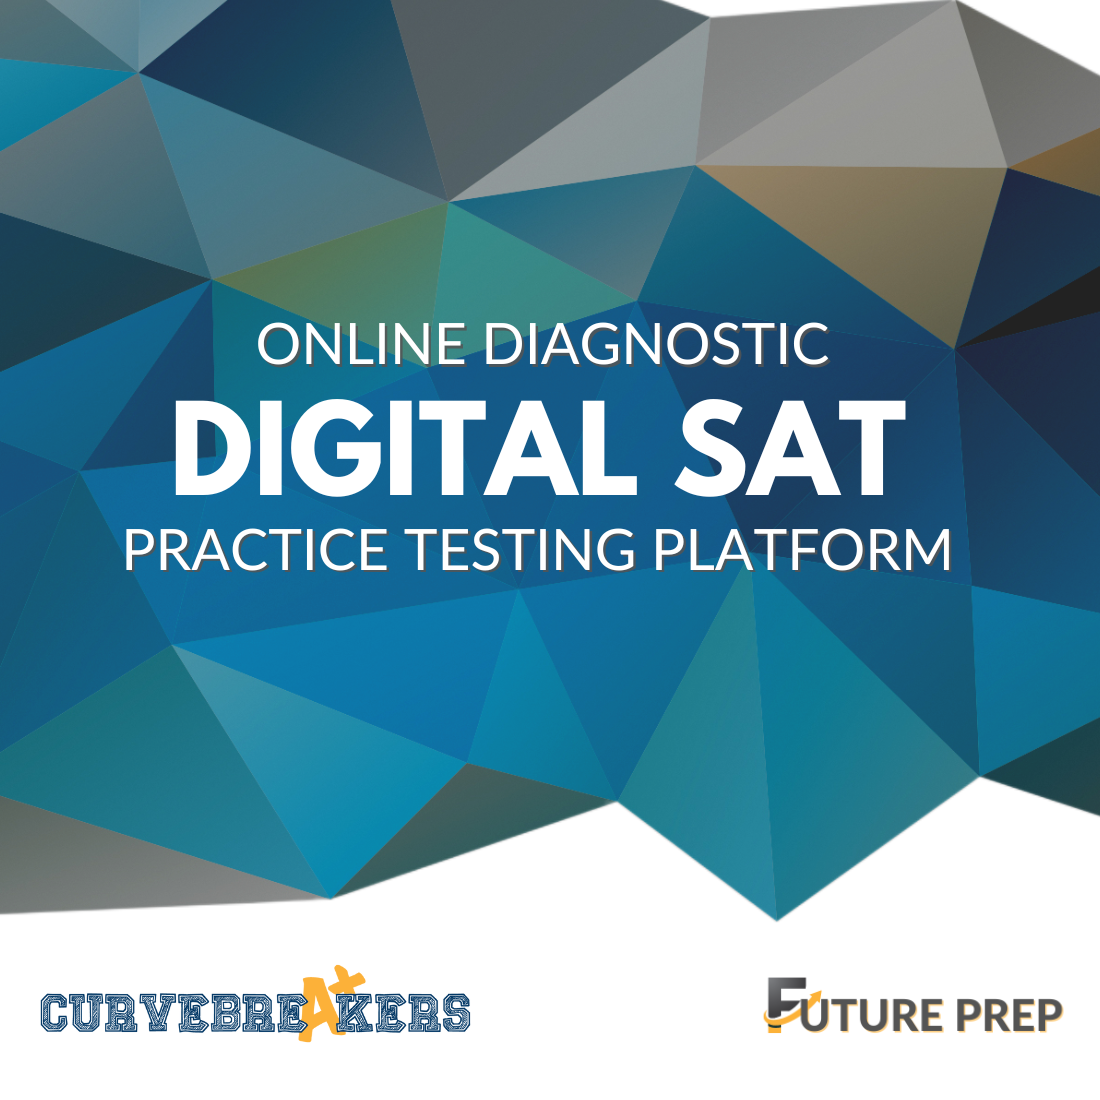 Online Diagnostic Digital SAT Practice Testing Platform